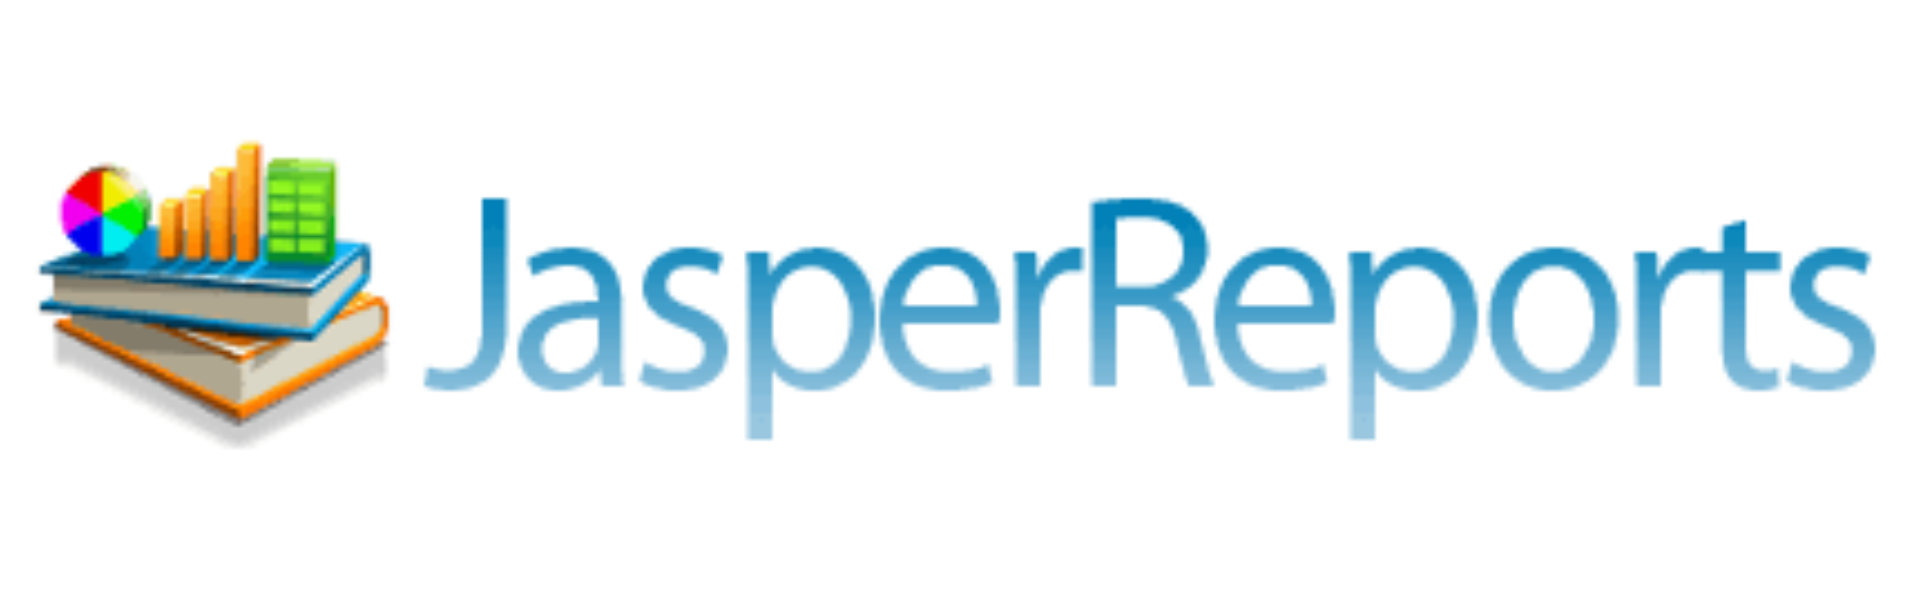 JasperReports_logo